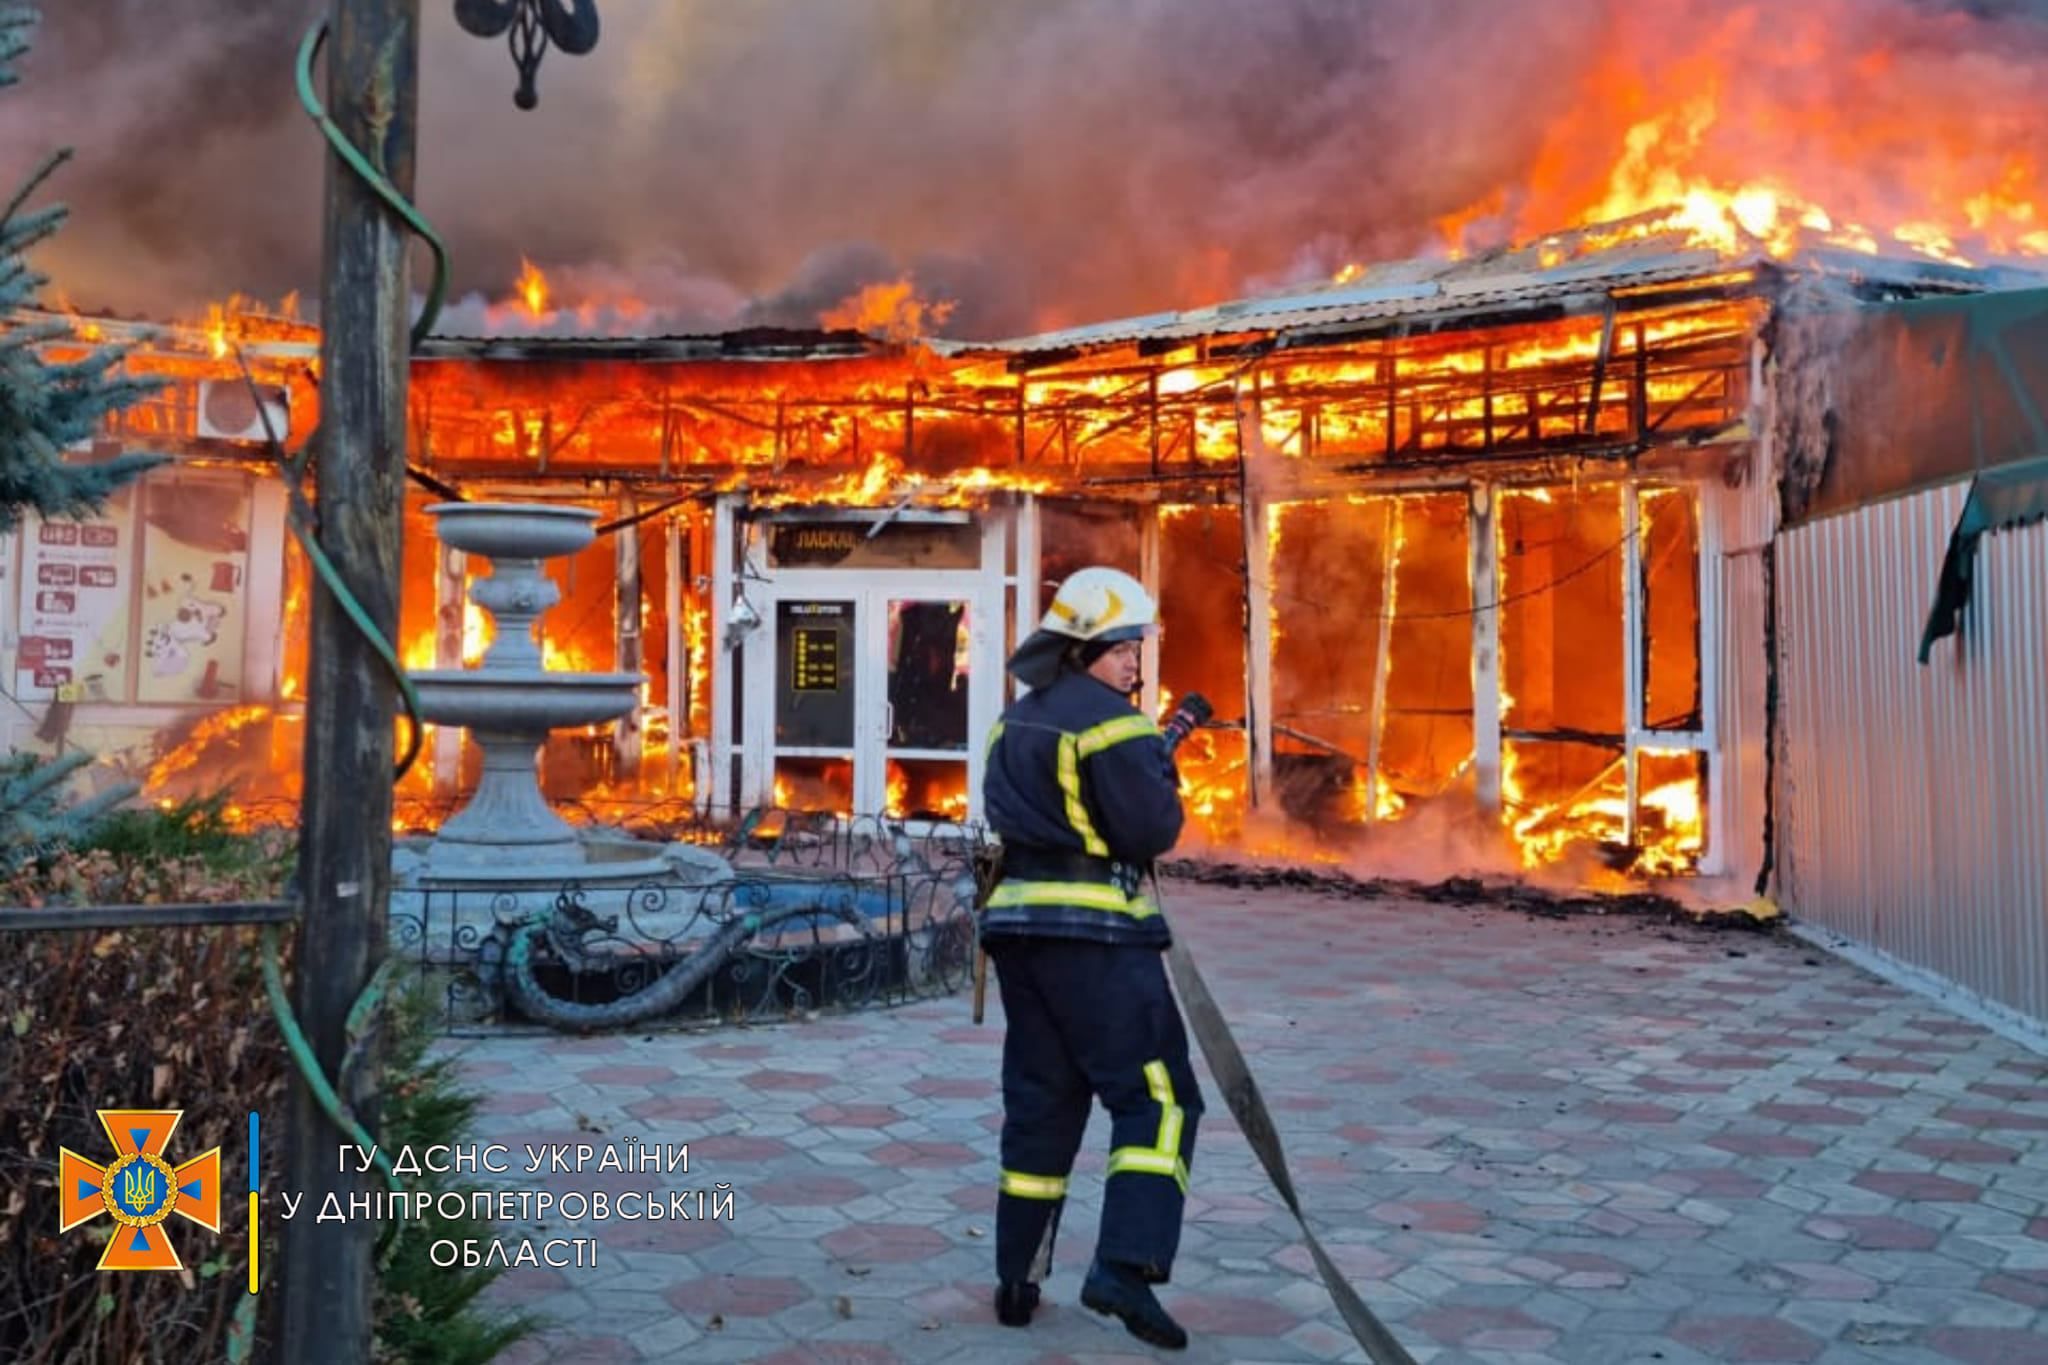 Палають ломбард, кафе та магазини: під Дніпром сталась масштабна пожежа - Україна новини - 24 Канал